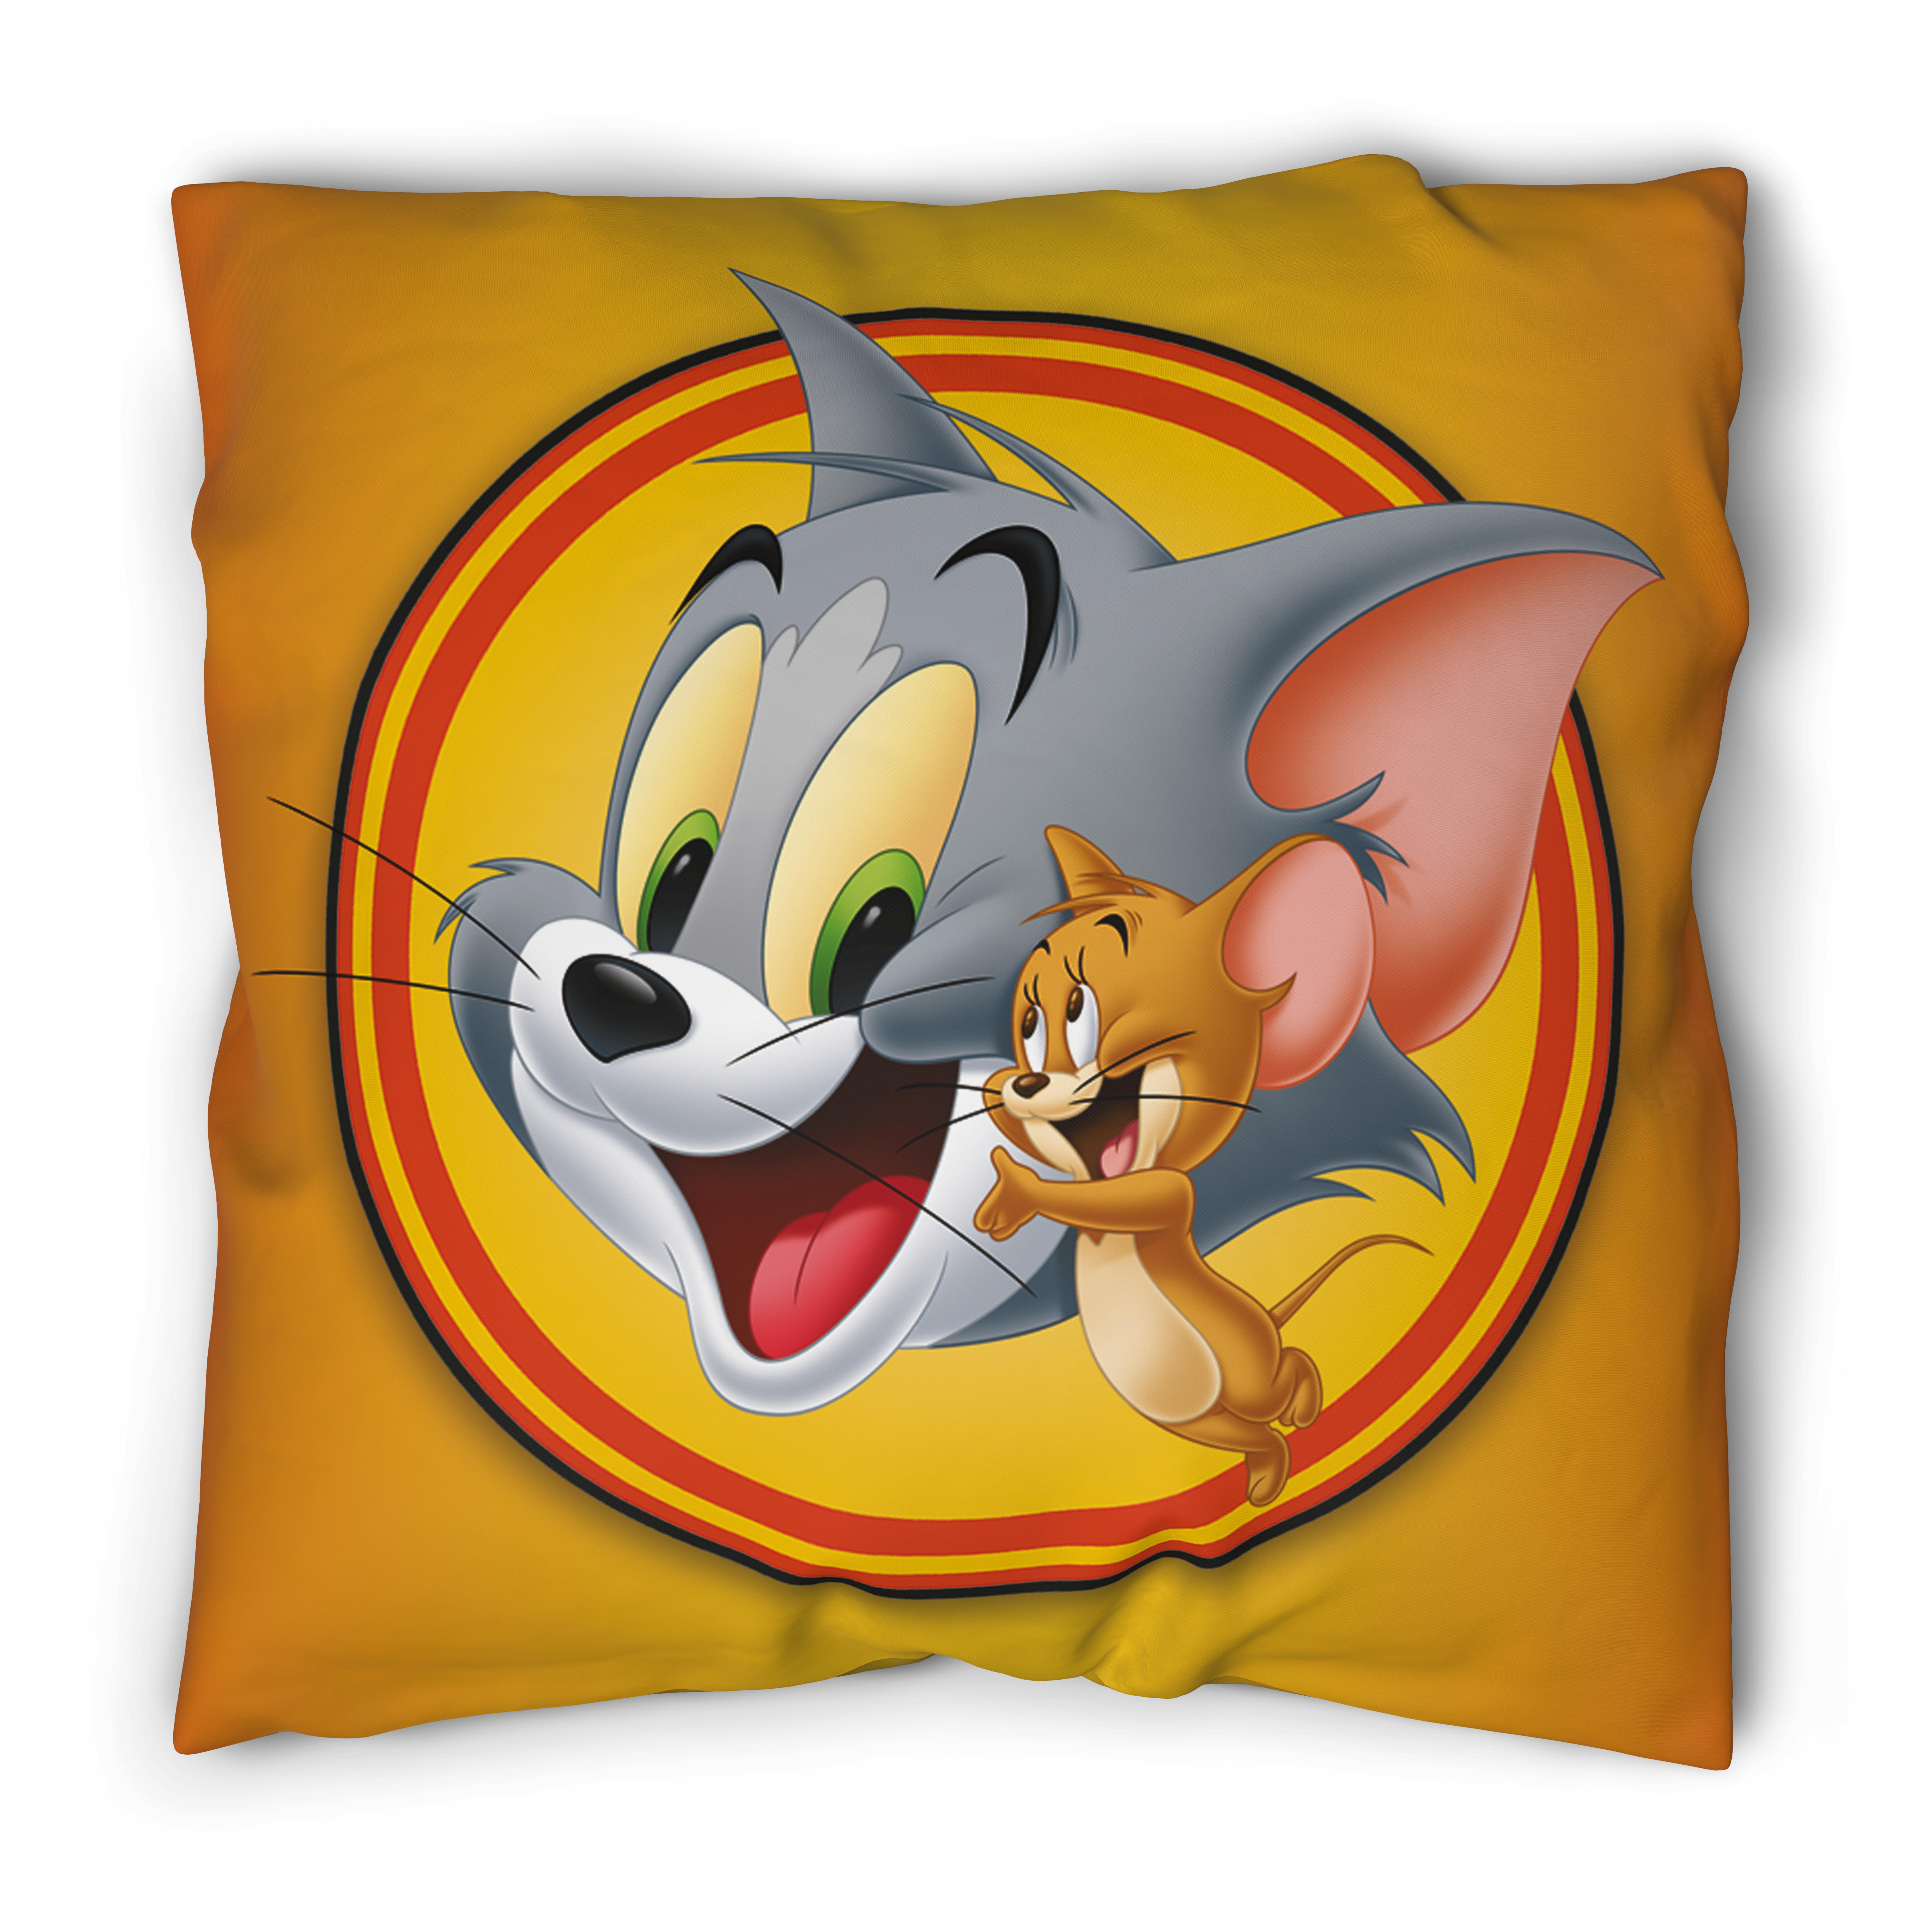 Microfaser Bettwäsche Tom & Jerry Tom & Jerry - orange/rot (135,00/200,00cm)